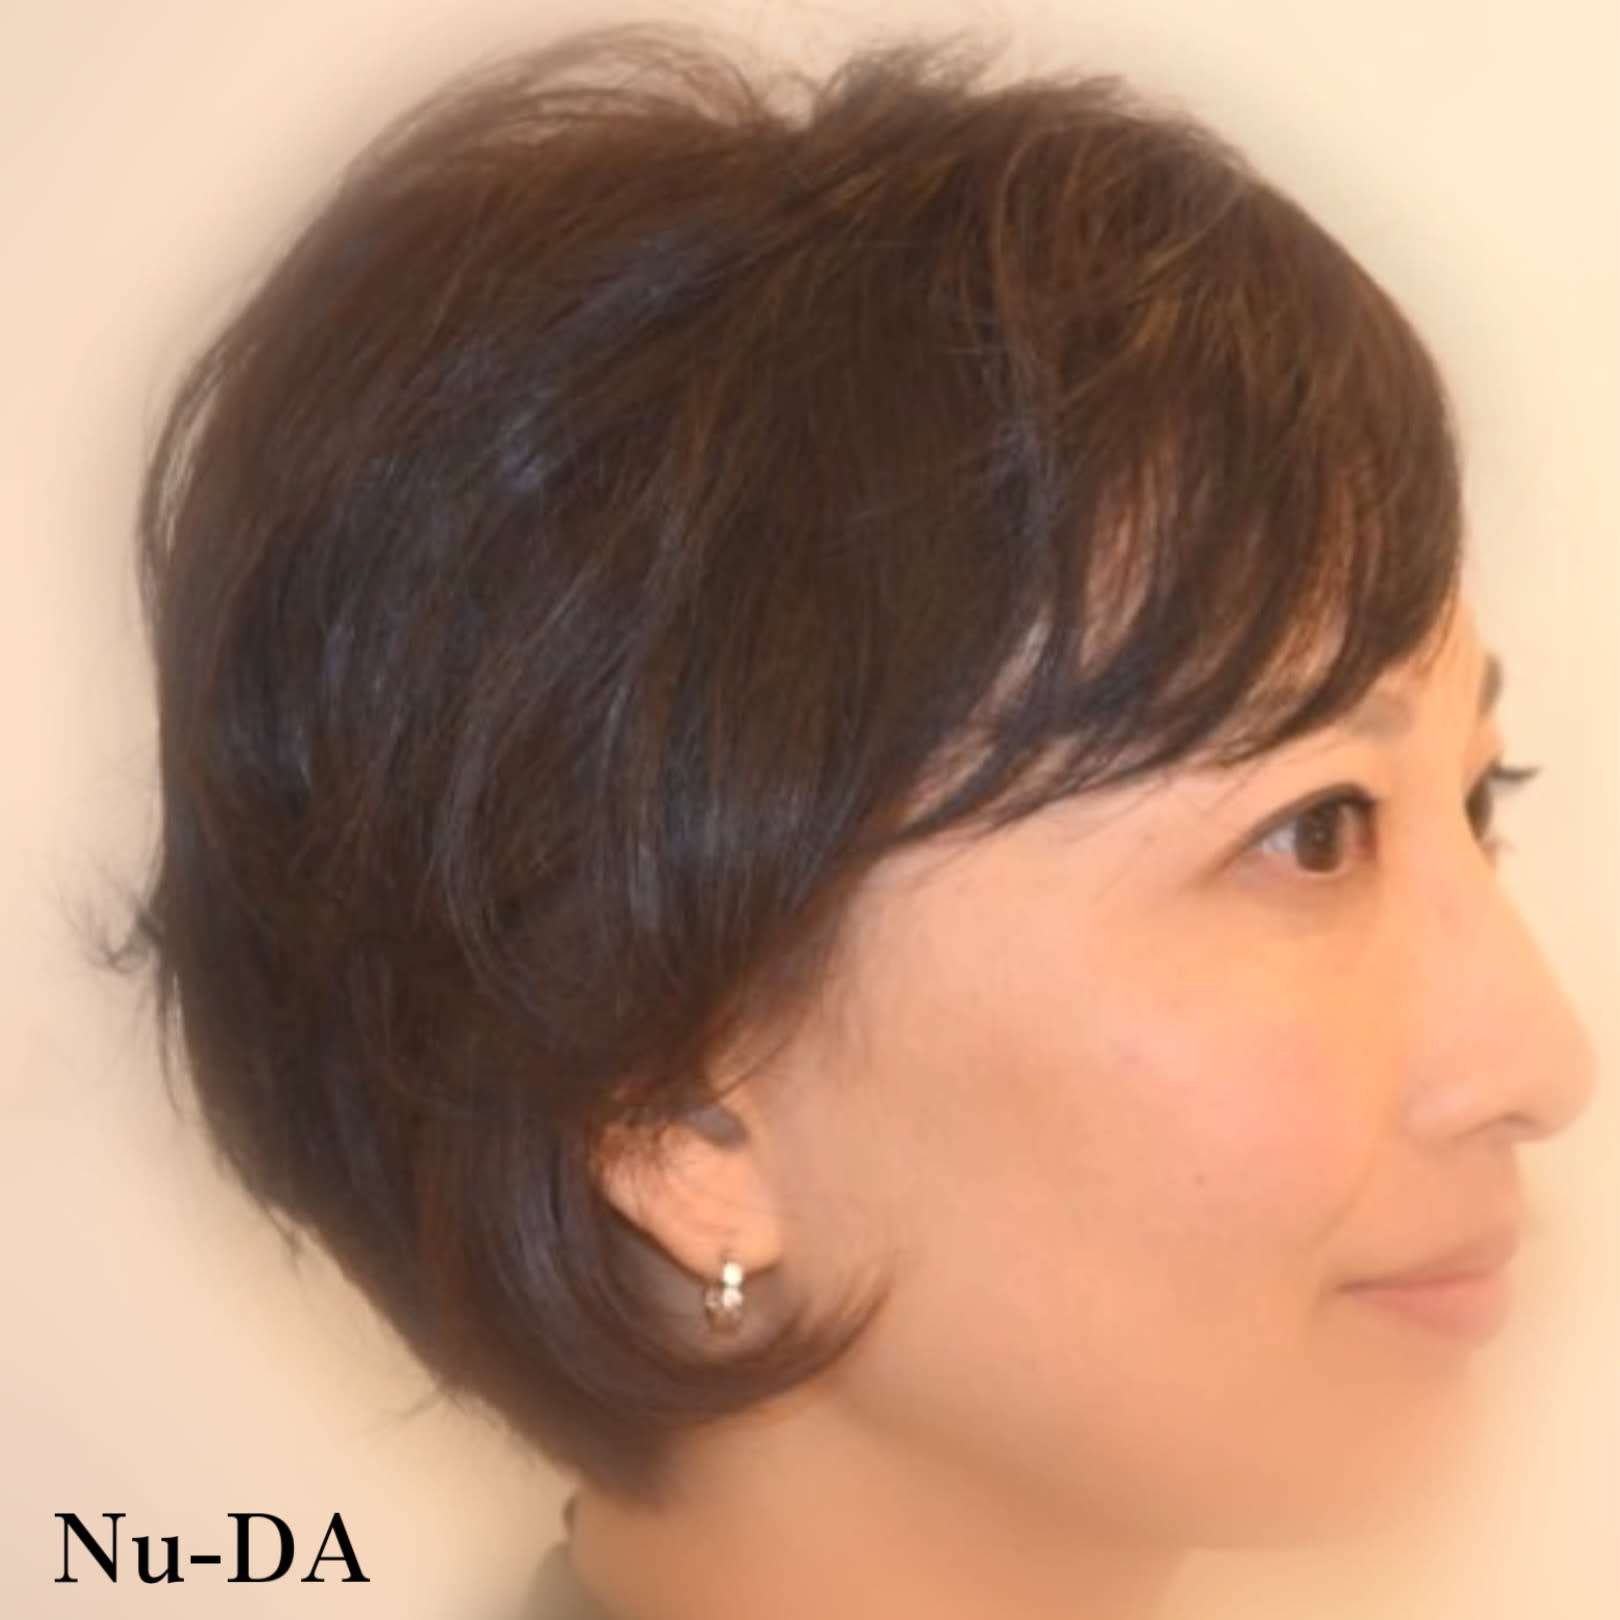 hair Nu-DA【ヘアヌーダ】のスタイル紹介。【Nu-DA】ふんわりボディーパーマ